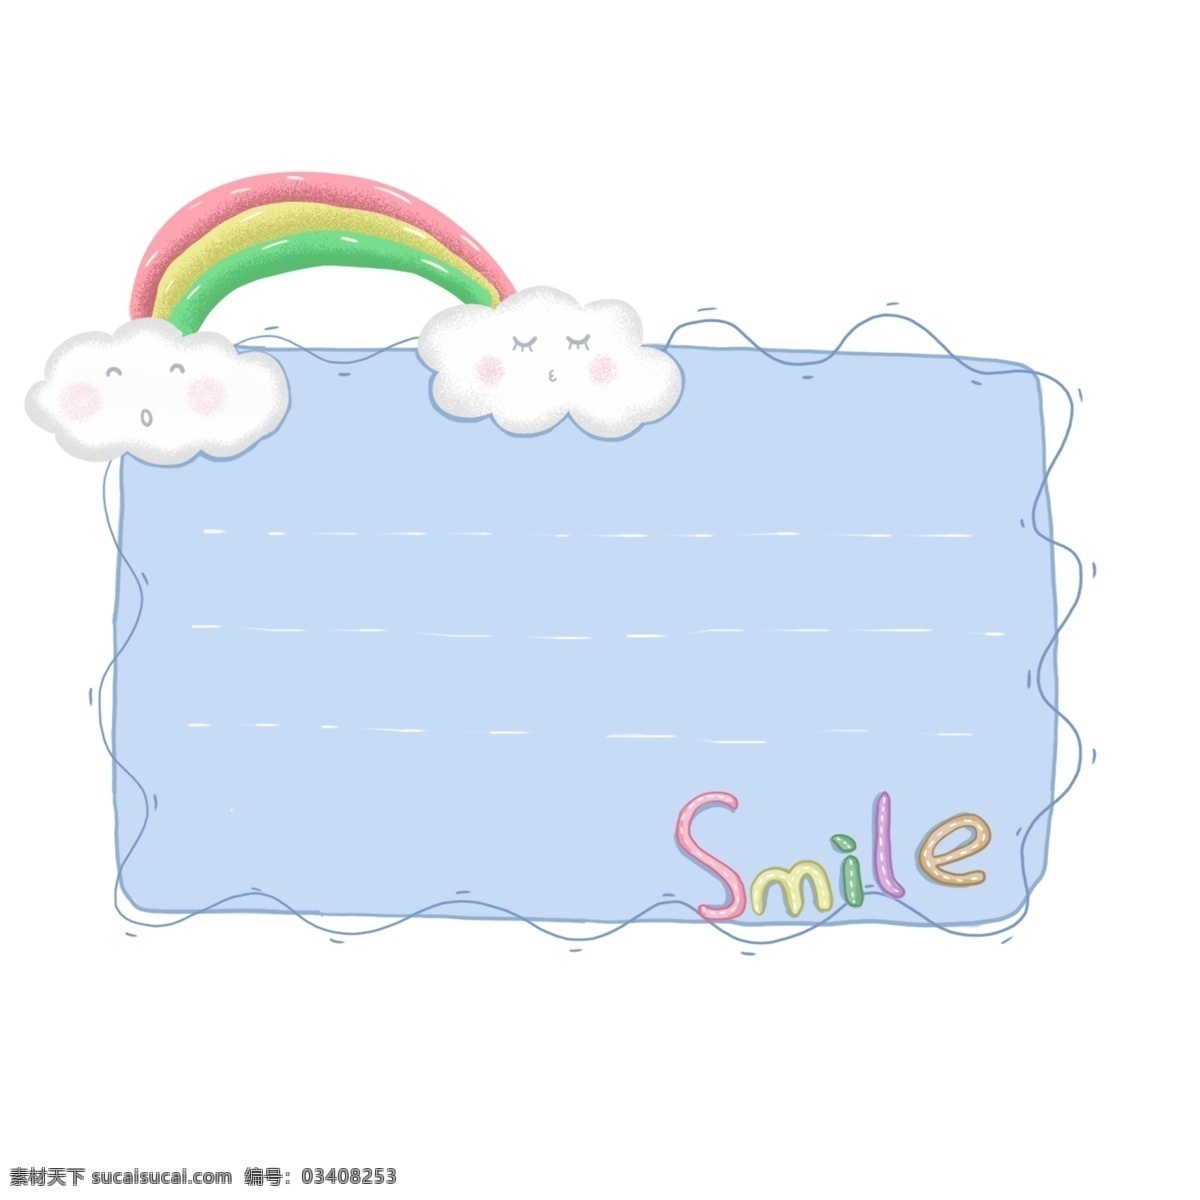 原创 手绘 可爱 卡通 彩虹 对话框 商用 元素 装饰 白云 可商用 设计元素 手账